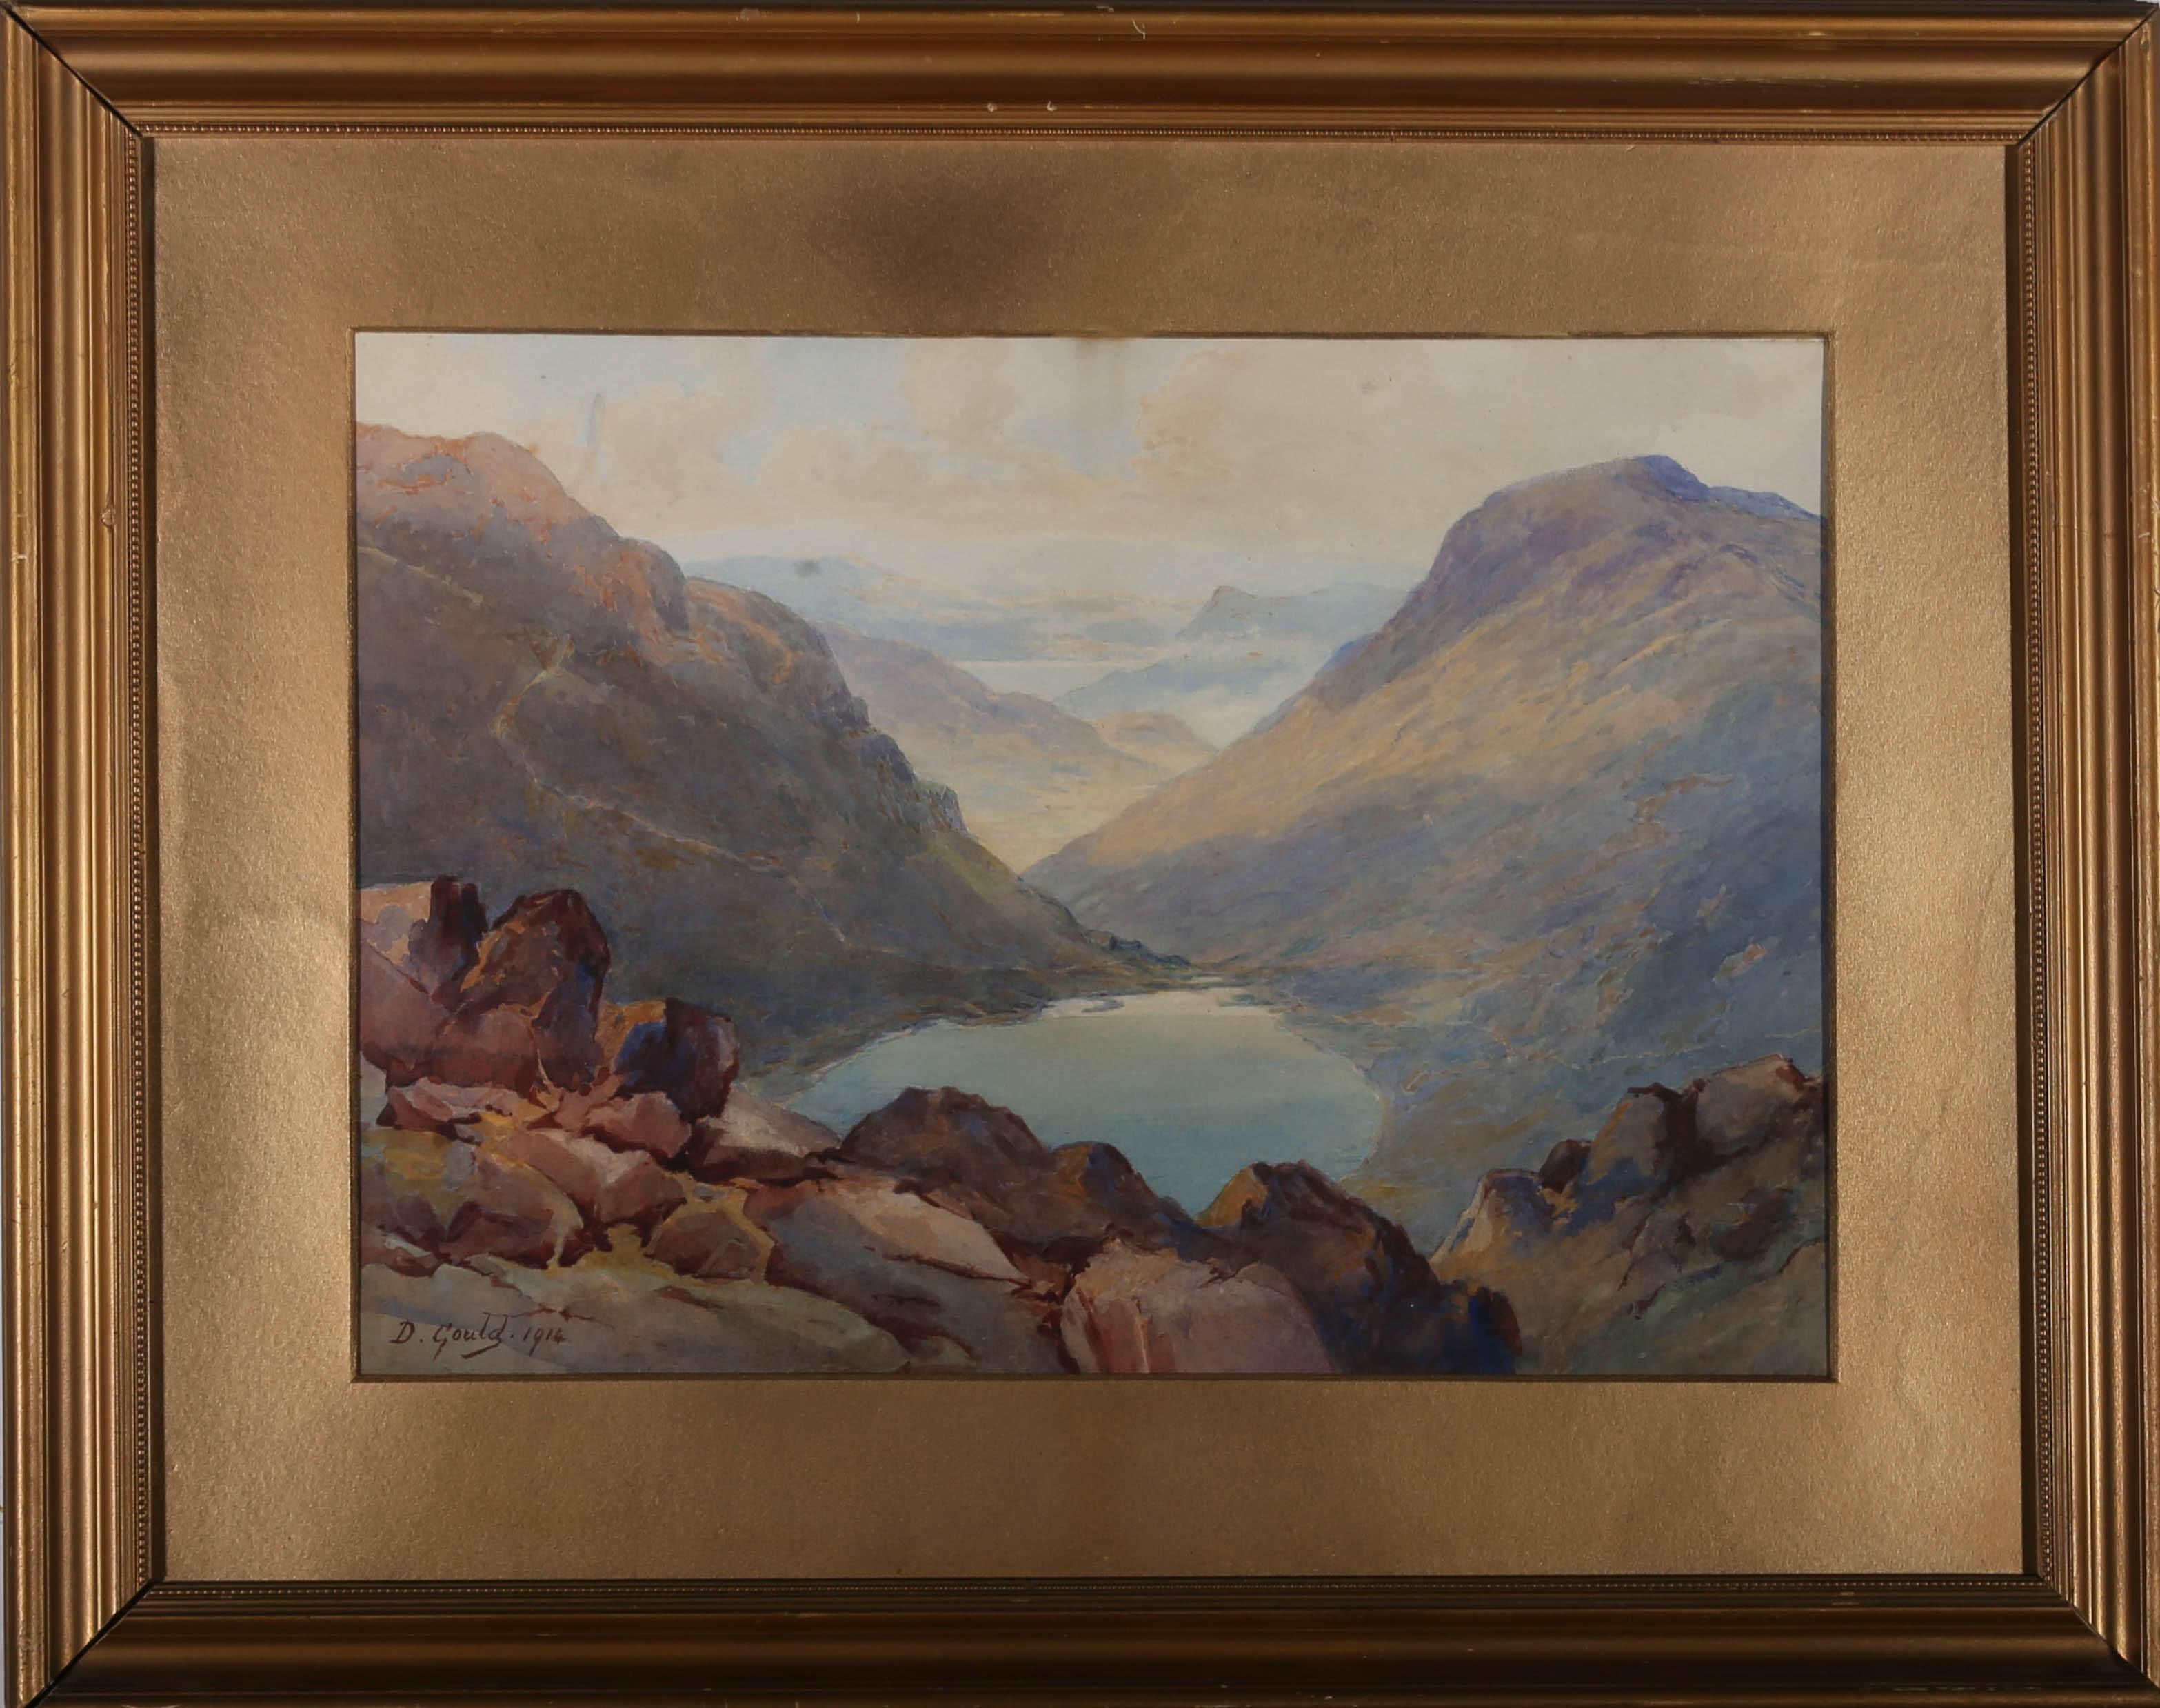 Daphne Boothby Landscape Art – David Gould (1871-1952) – Gerahmtes Aquarell, Grisedale Farm & Pass, 1914